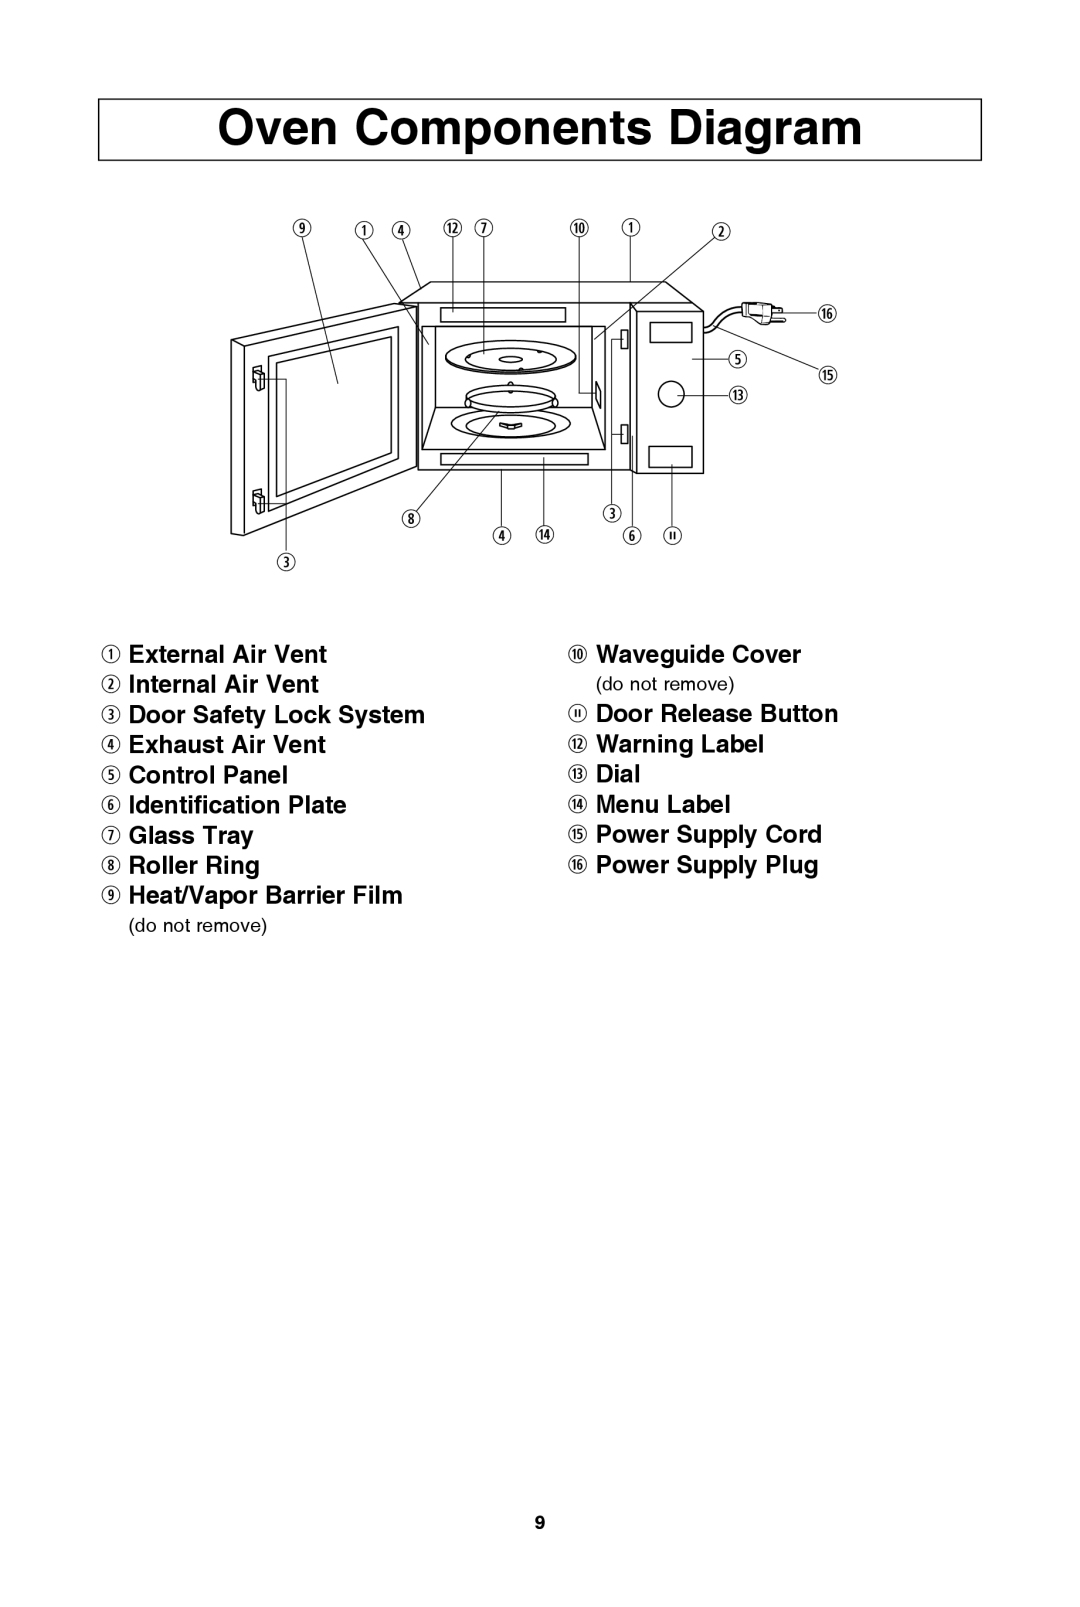 Panasonic NN-SD654B, NN-SD654W oven components diagram, q external air vent w internal air vent, o heat/vapor barrier film 